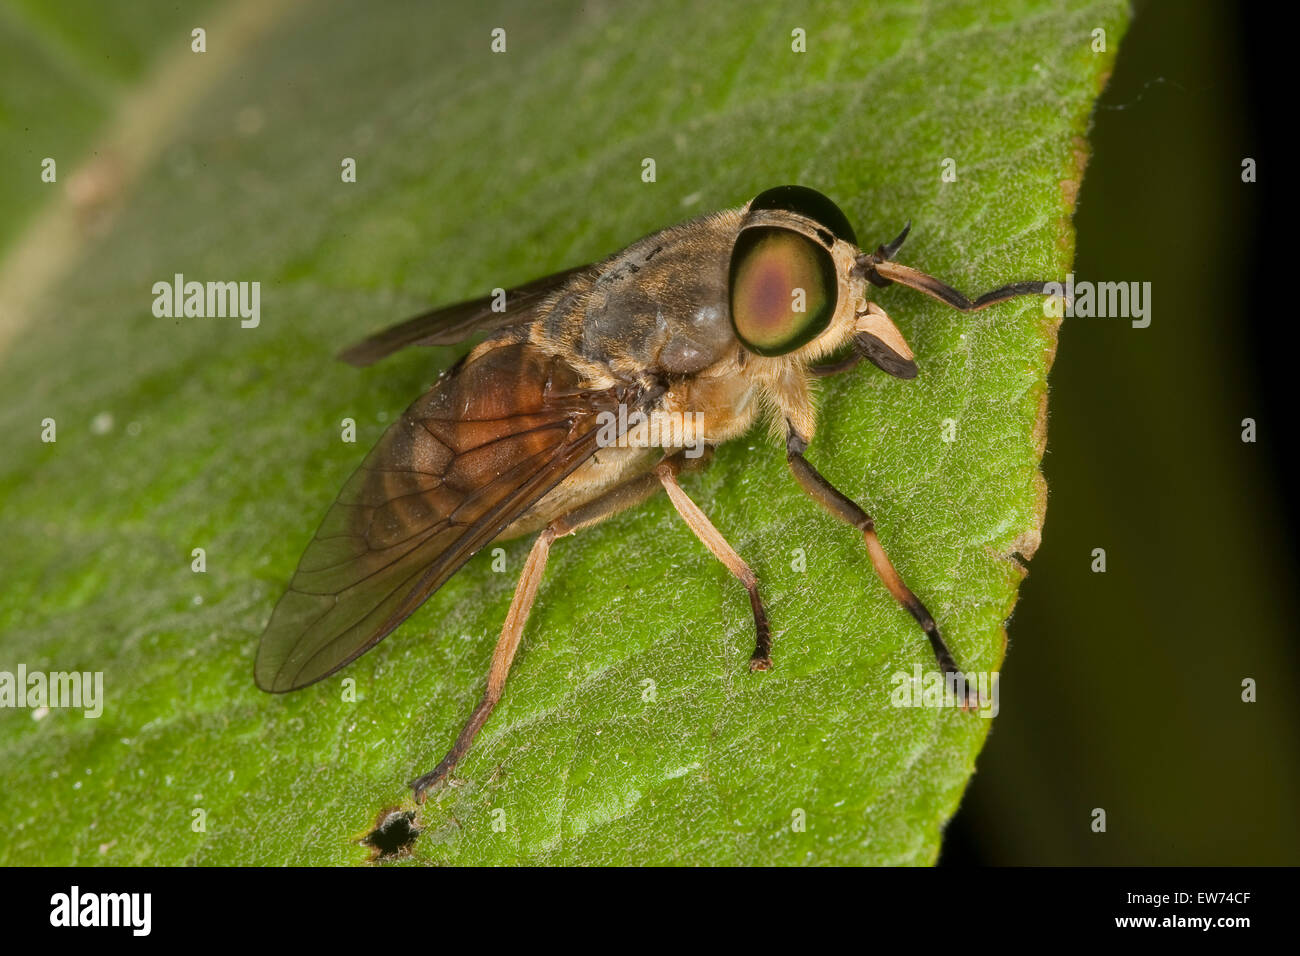 Large horsefly, Rinder-Bremse, Rinderbremse, Bremse, Bremsen, Tabanus bovinus Stock Photo